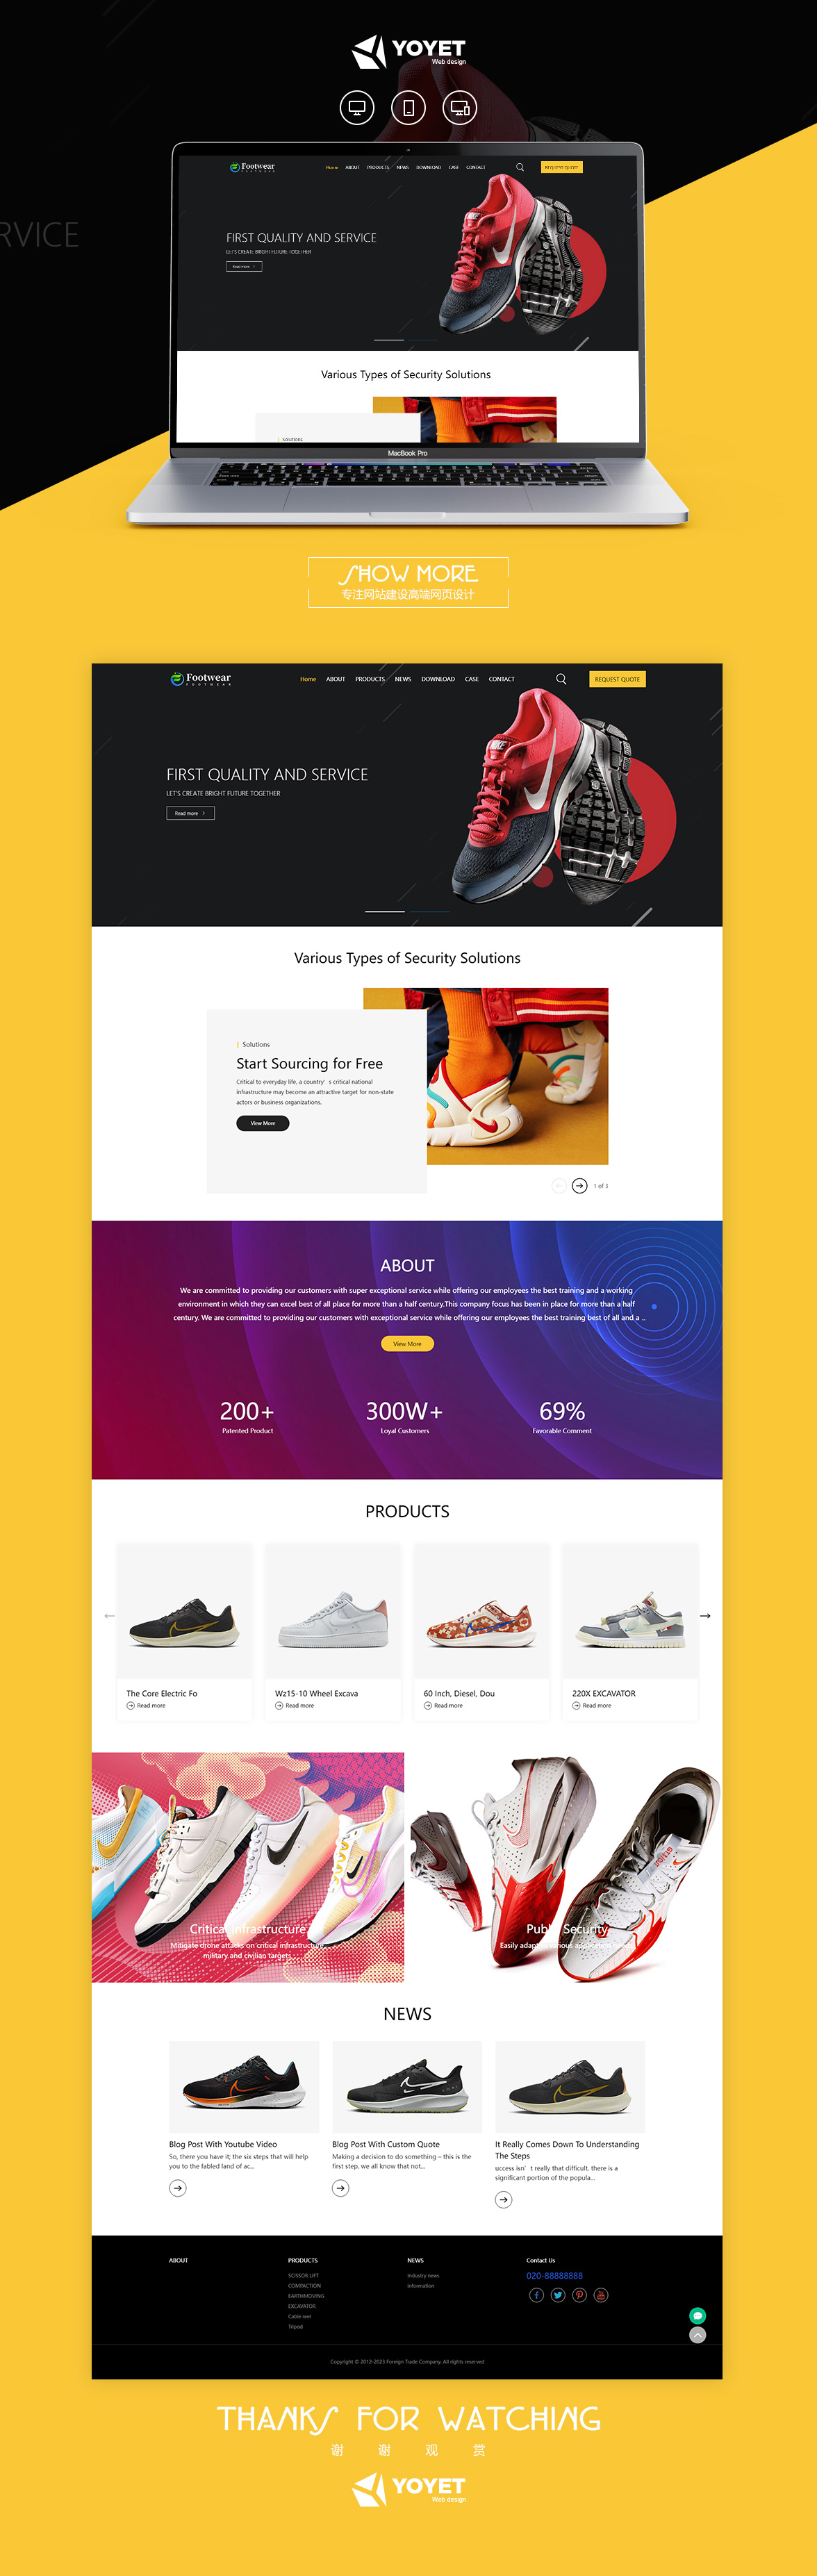 鞋业外贸企业网站响应式模板案例图片